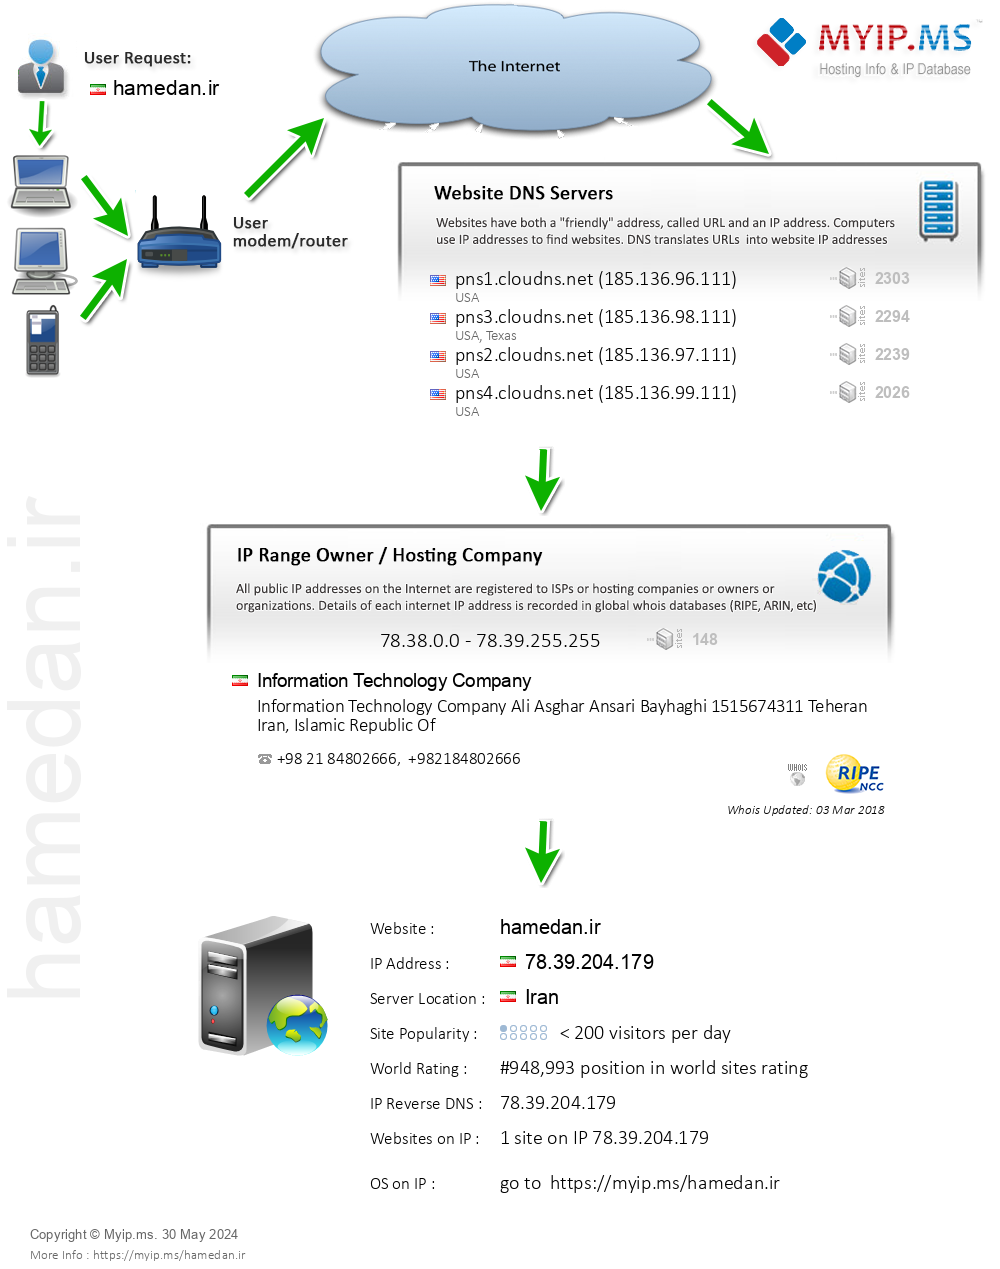 Hamedan.ir - Website Hosting Visual IP Diagram